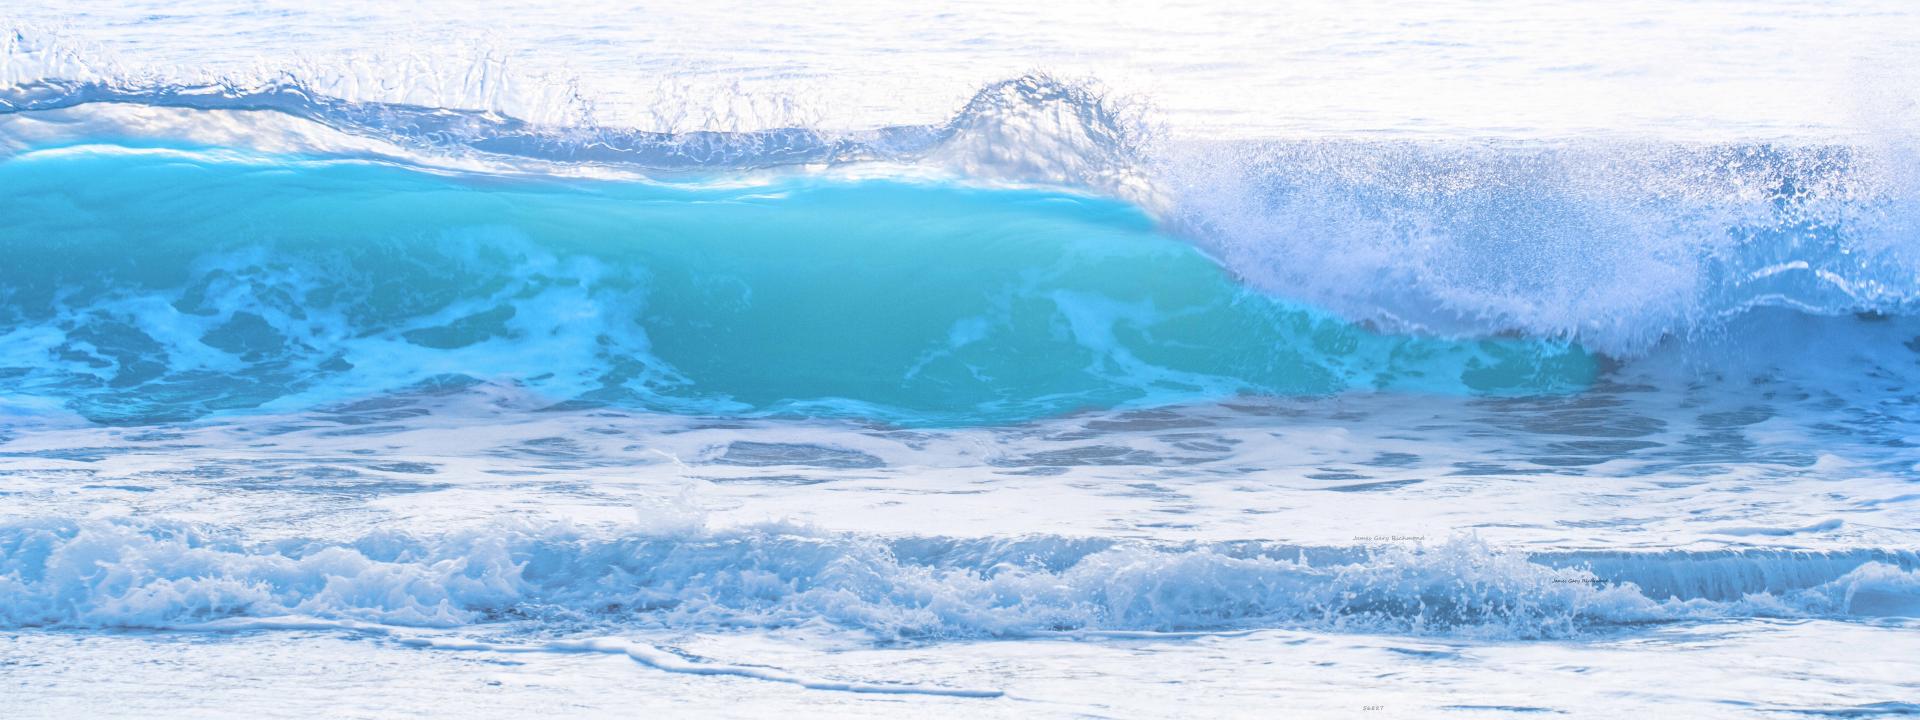 56887p  ocean surf, breaking wave, beach ,,  .jpg